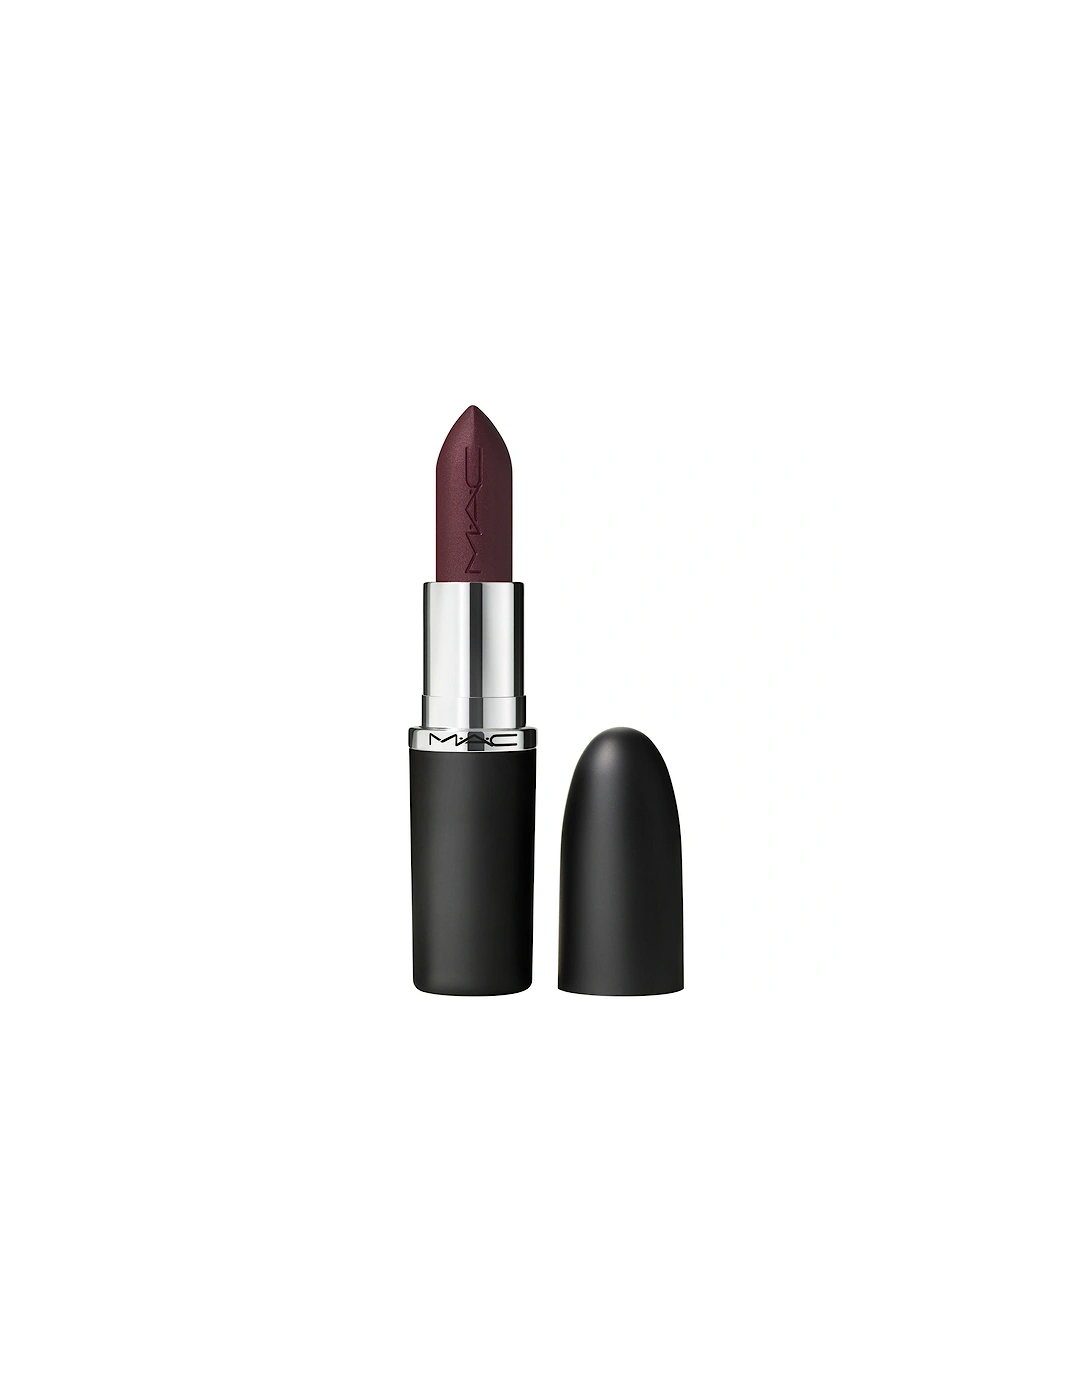 Macximal Matte Lipstick - Smoked Purple, 2 of 1